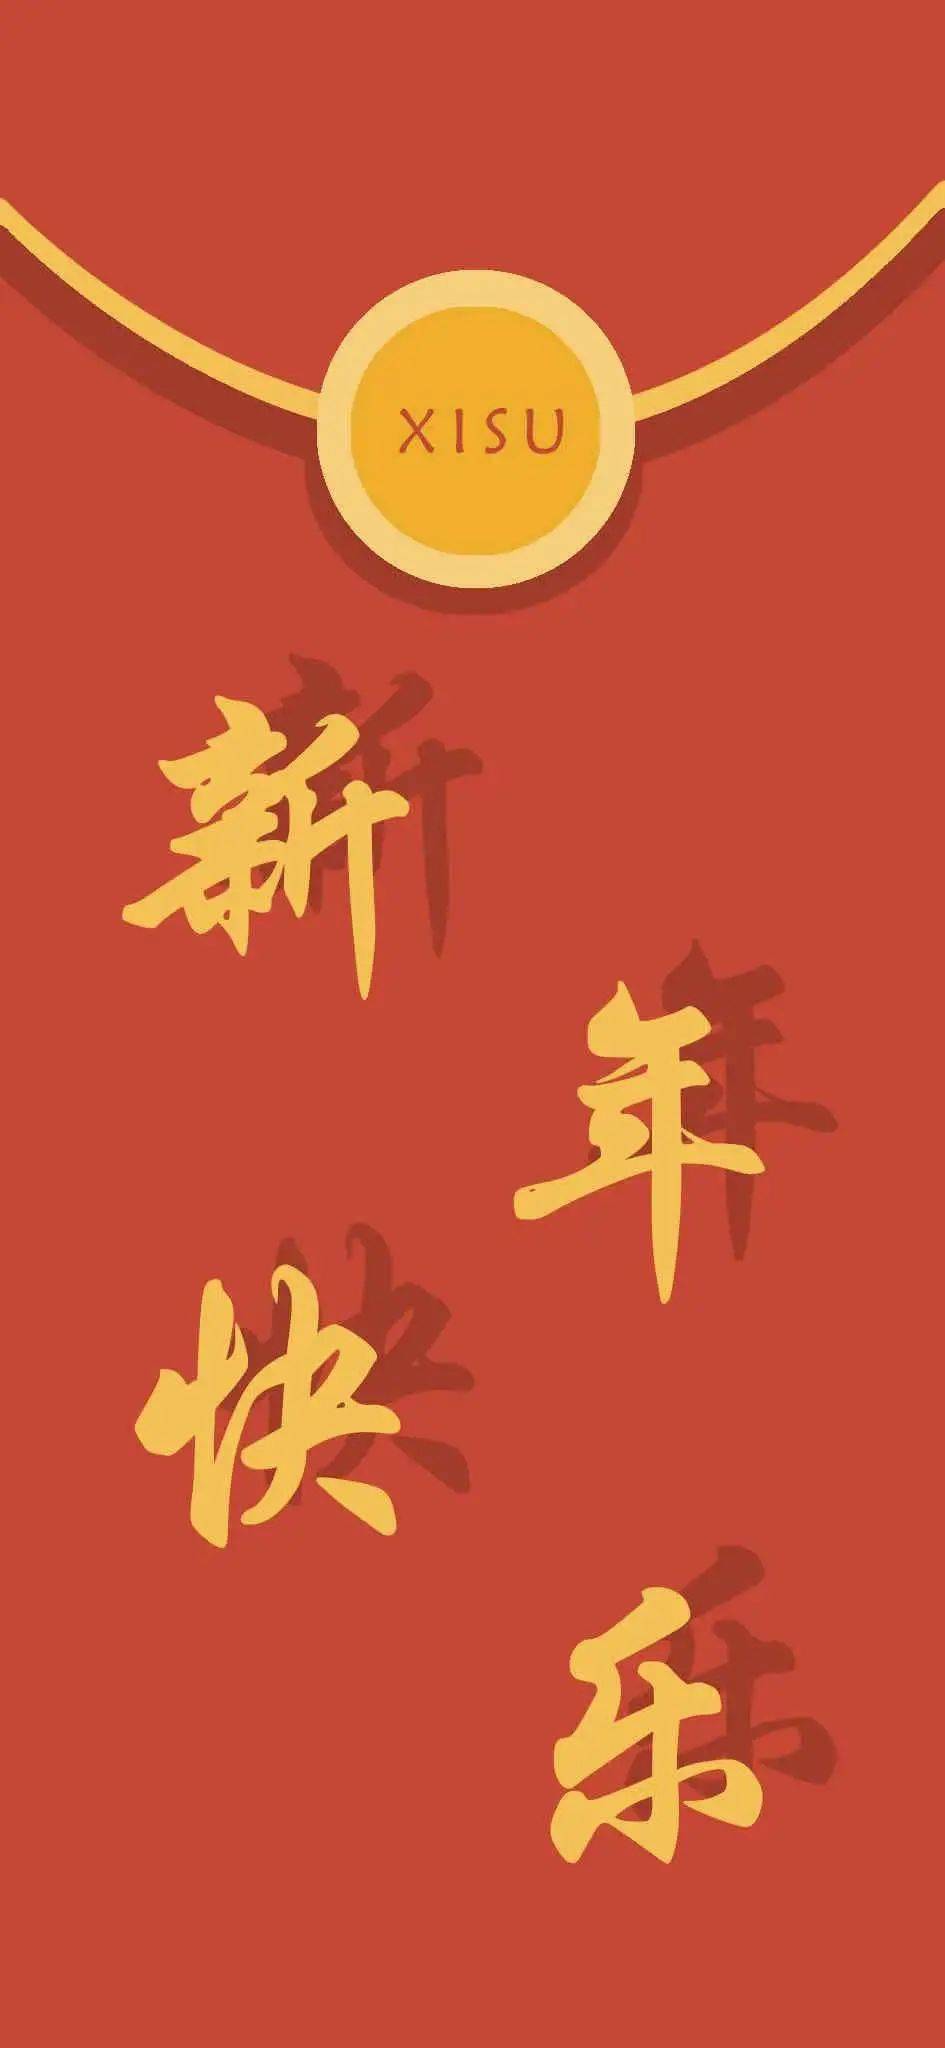 xisu专属红包封面和新年壁纸来了